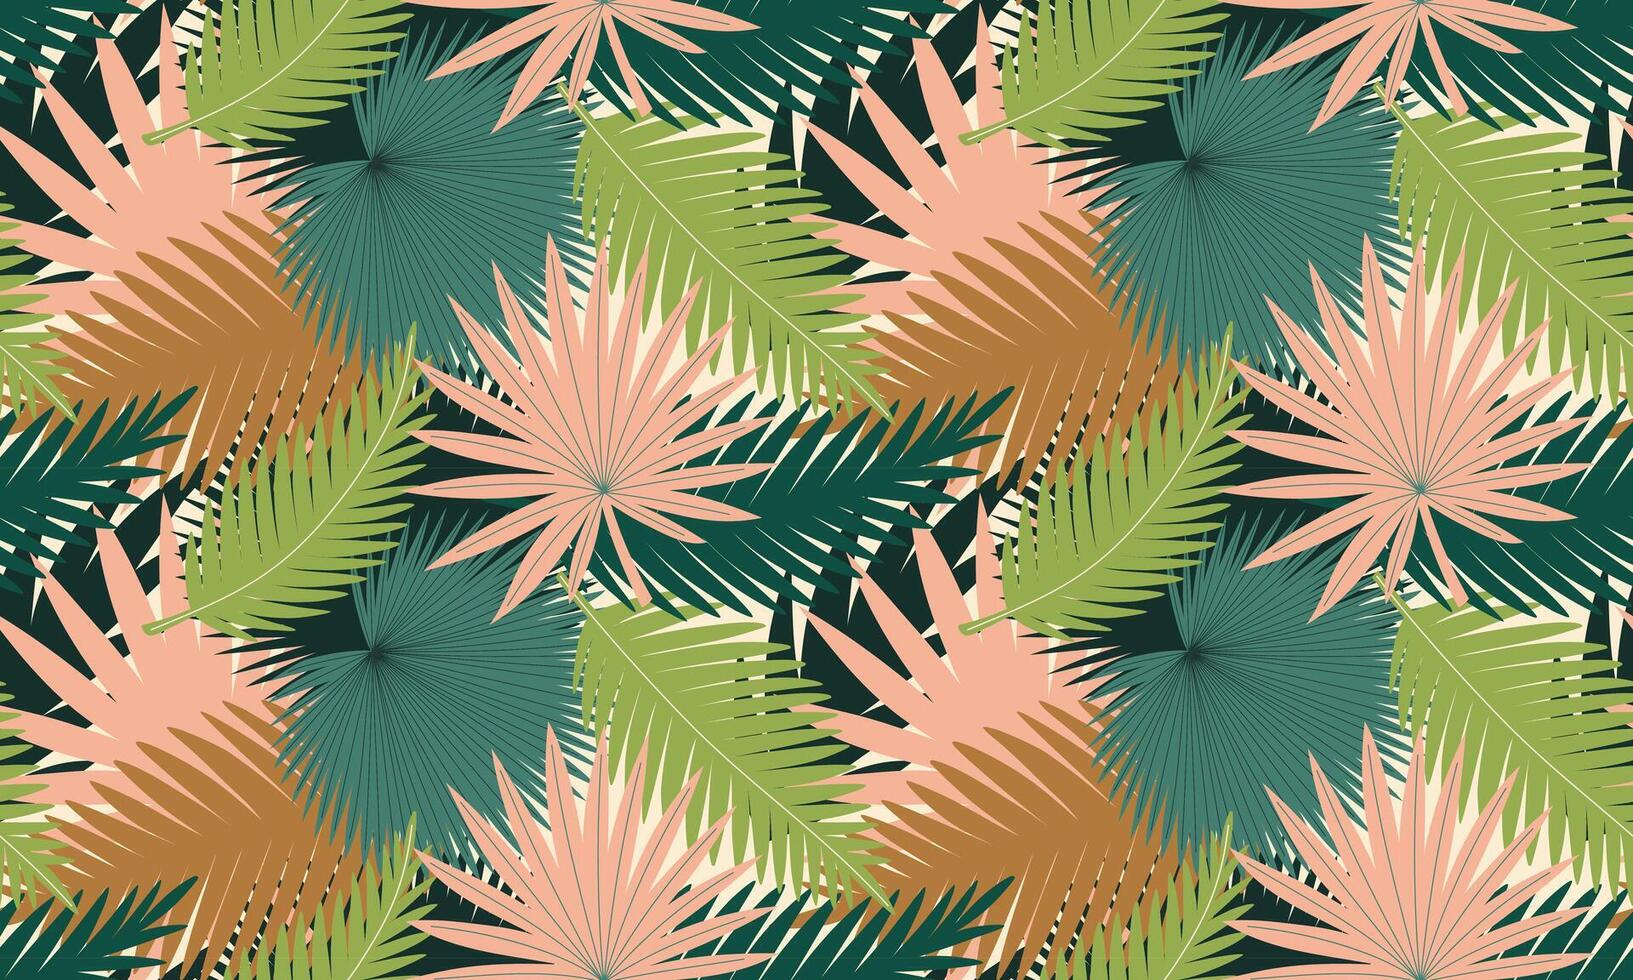 desatado padronizar com Palma folhas. abstrato tropical folhagem fundo. moderno exótico selva plantas. plano ilustração para papel, cobrir, tecido, interior decoração vetor